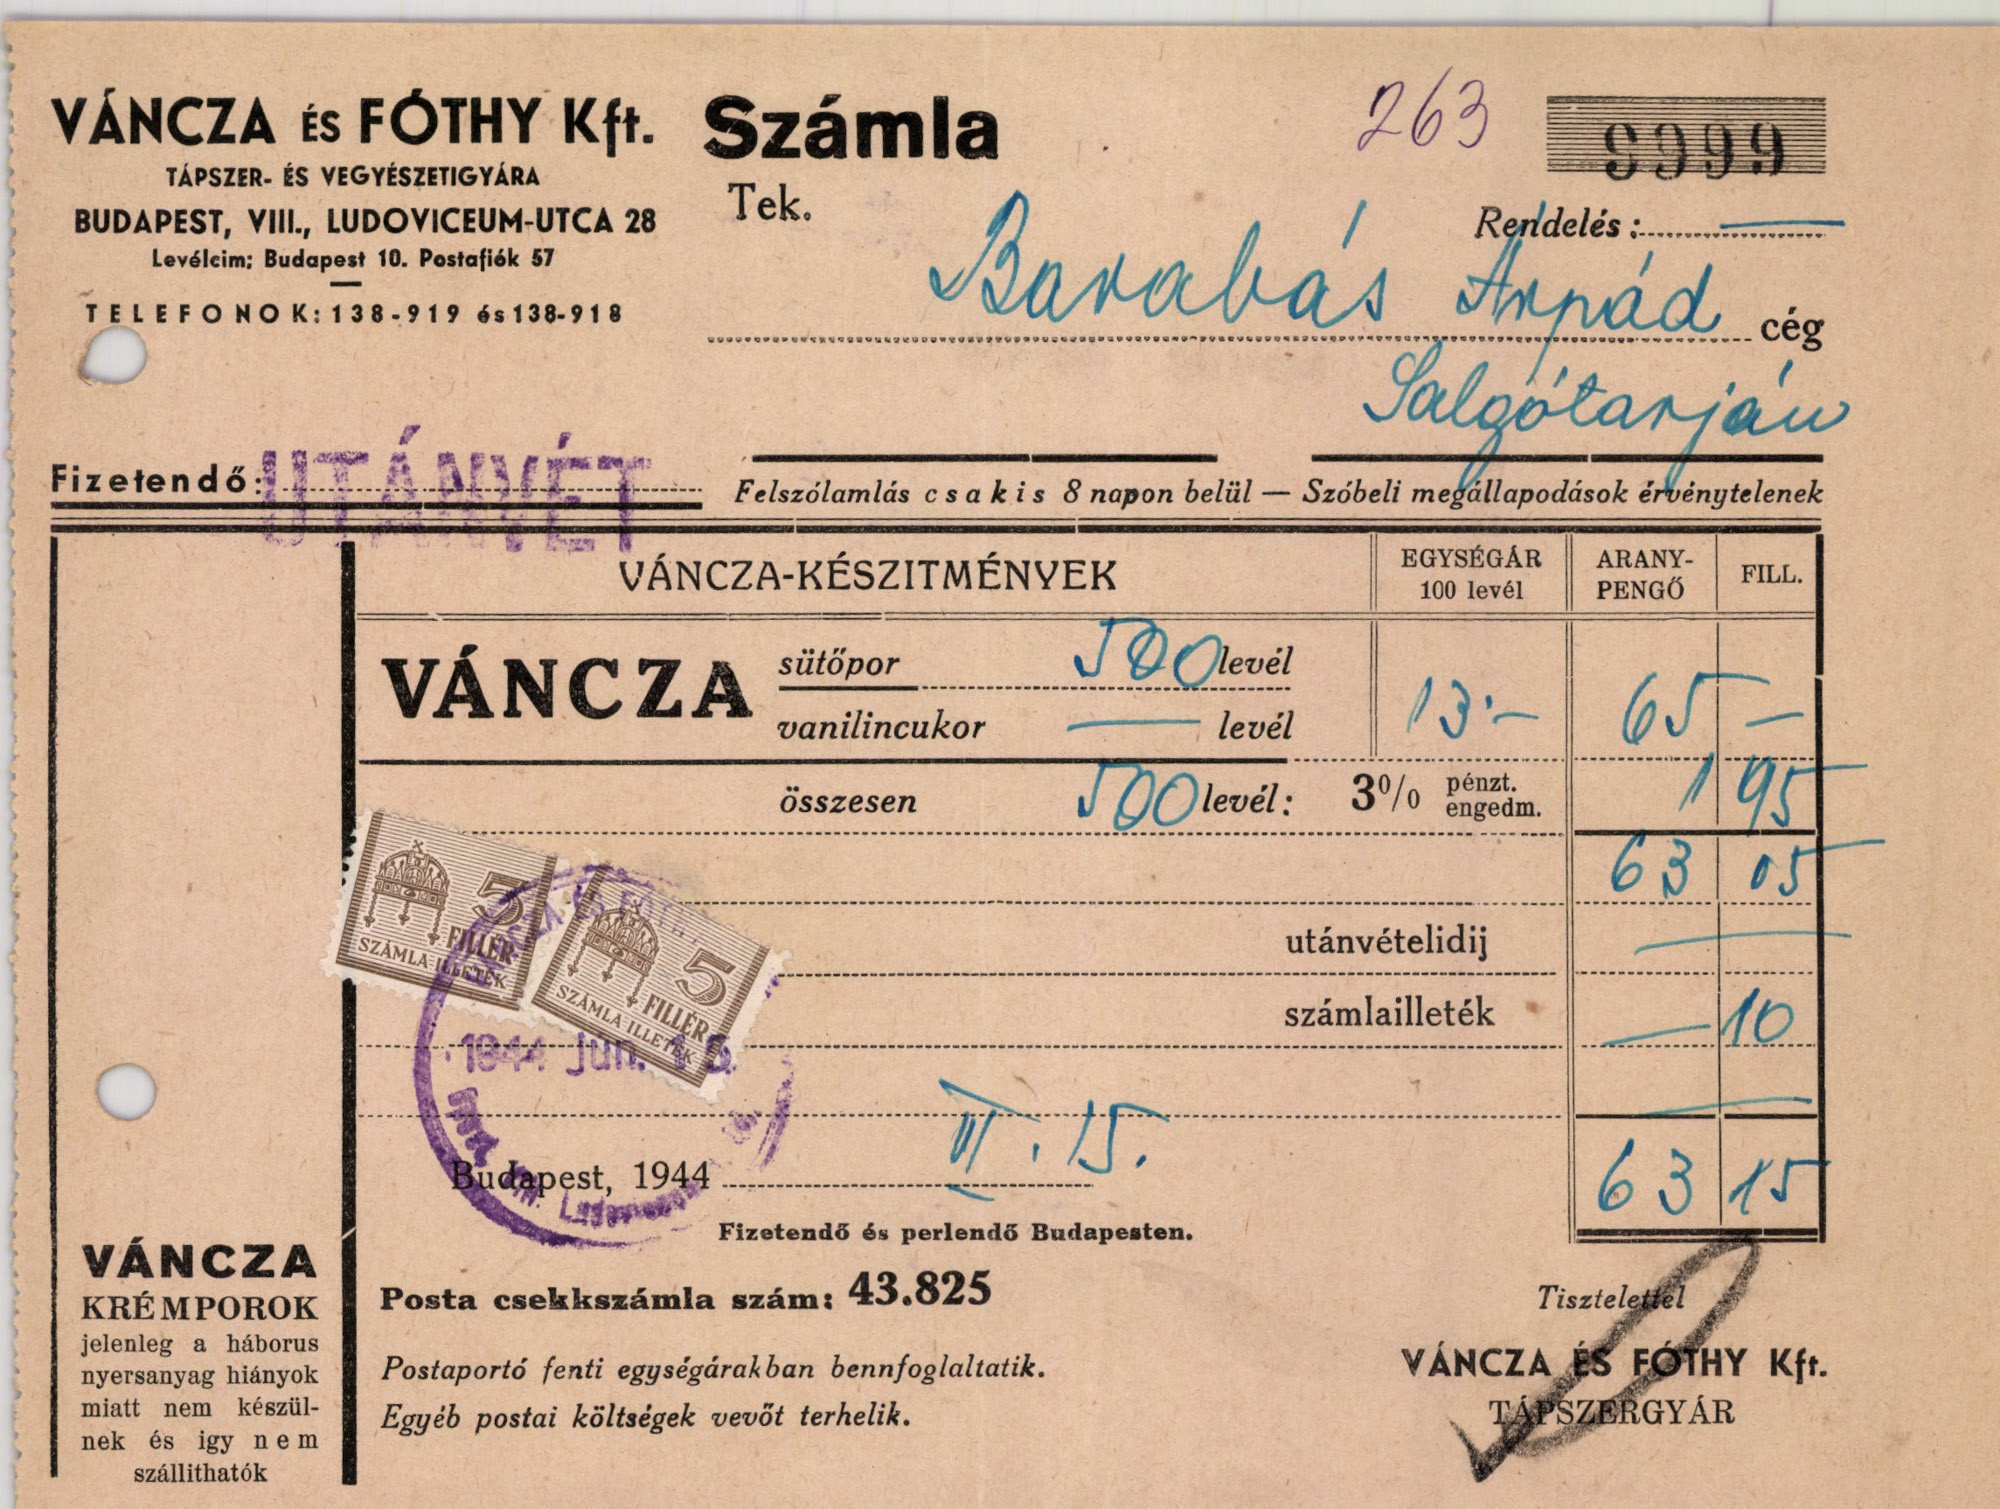 Váncza és Fóthy Kft. Tápszer- és Vegyészeti Gyára (Magyar Kereskedelmi és Vendéglátóipari Múzeum CC BY-NC-SA)